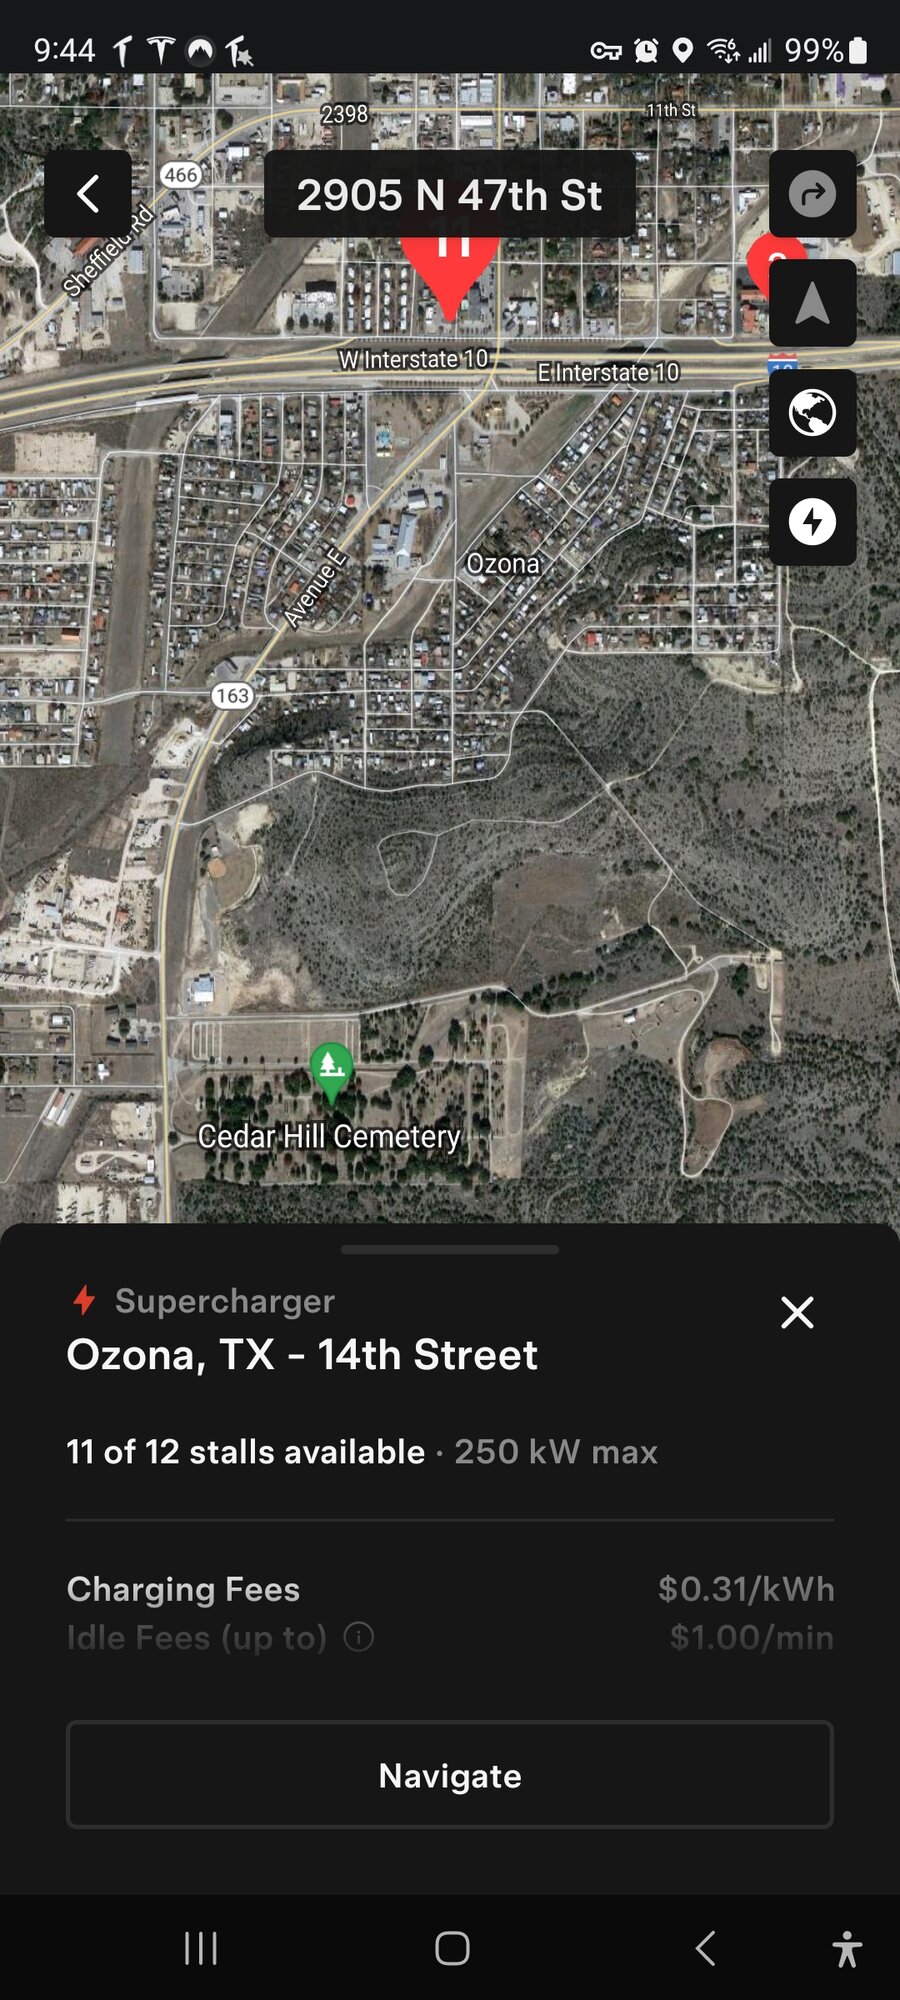 Tesla Supercharger Ozona Phone App 04-07-04.jpg